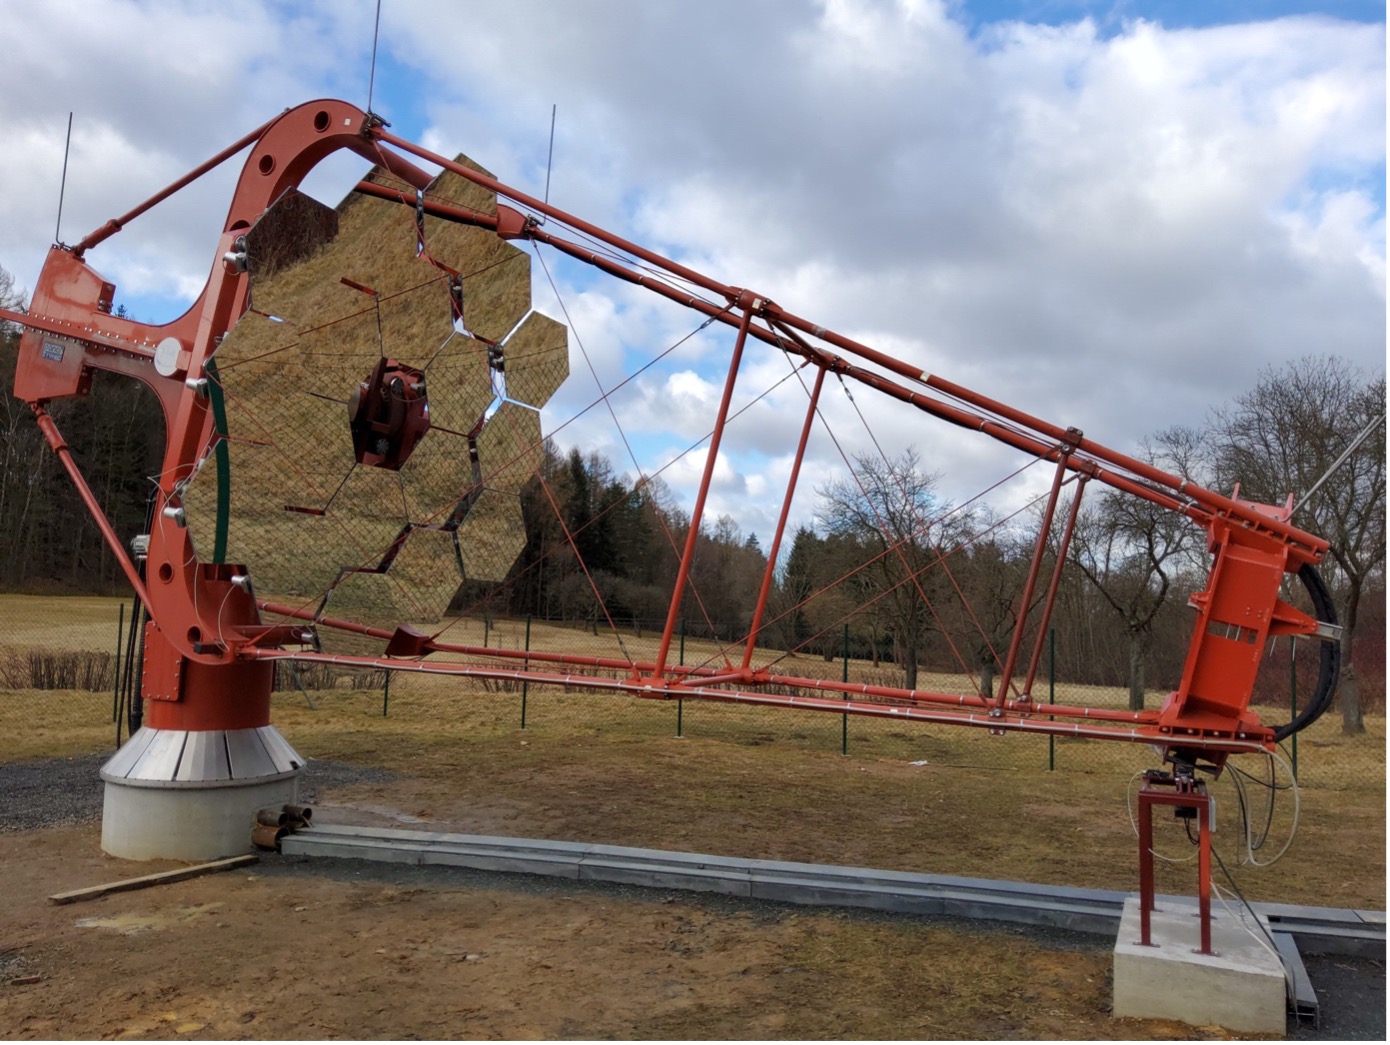 Drugi teleskop SST-1M zainstalowany w Obserwatorium w Ondřejovie. Wkrótce teleskop zostanie zaopatrzony w kamerę, co umożliwi prowadzenie obserwacji w trybie stereoskopowym przy użyciu dwóch teleskopów sprzężonych w mini sieć.